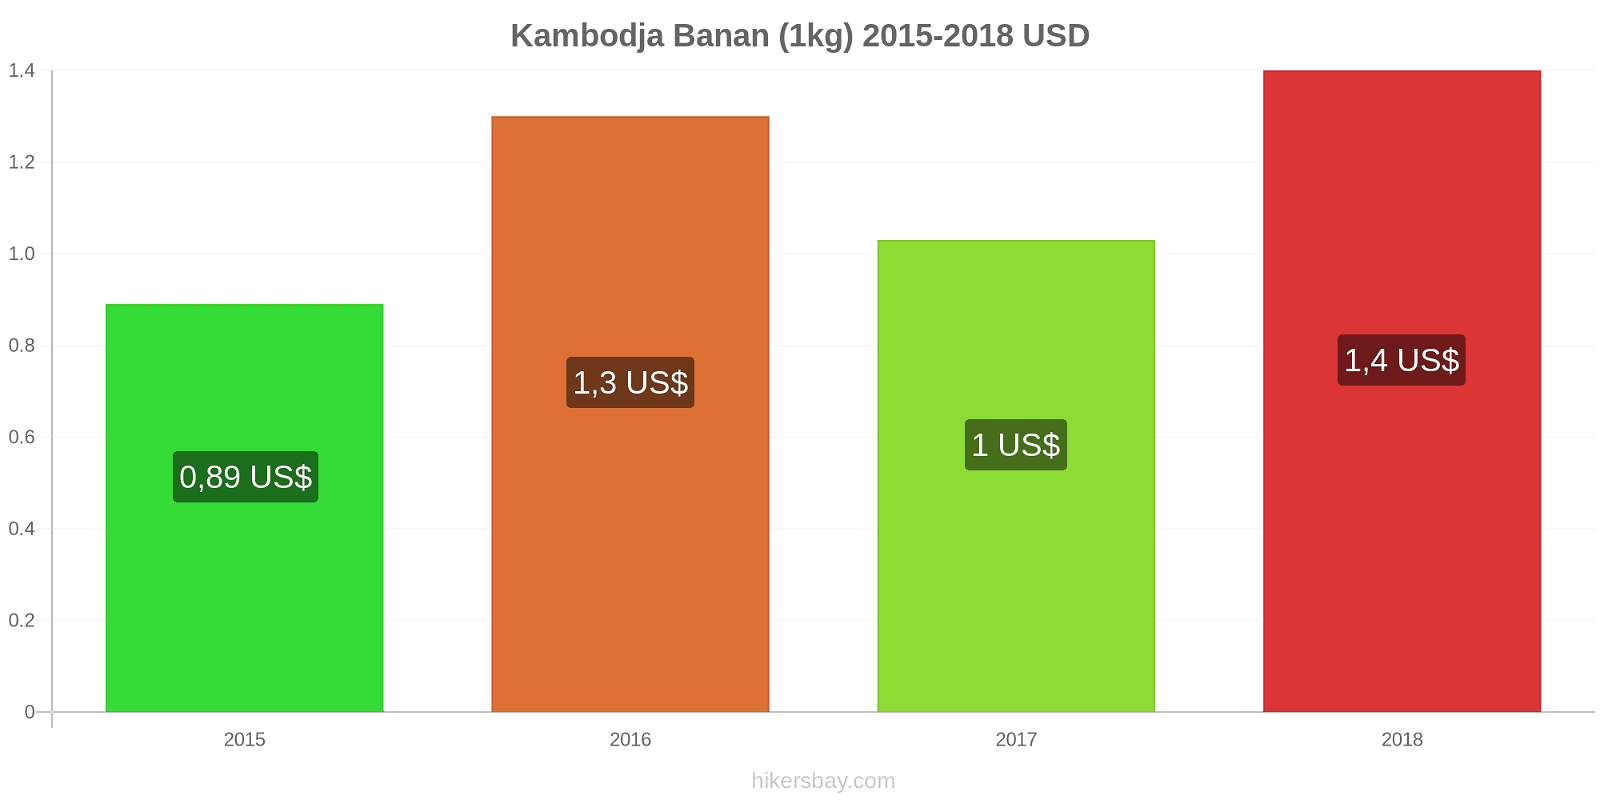 Kambodja prisändringar Bananer (1kg) hikersbay.com